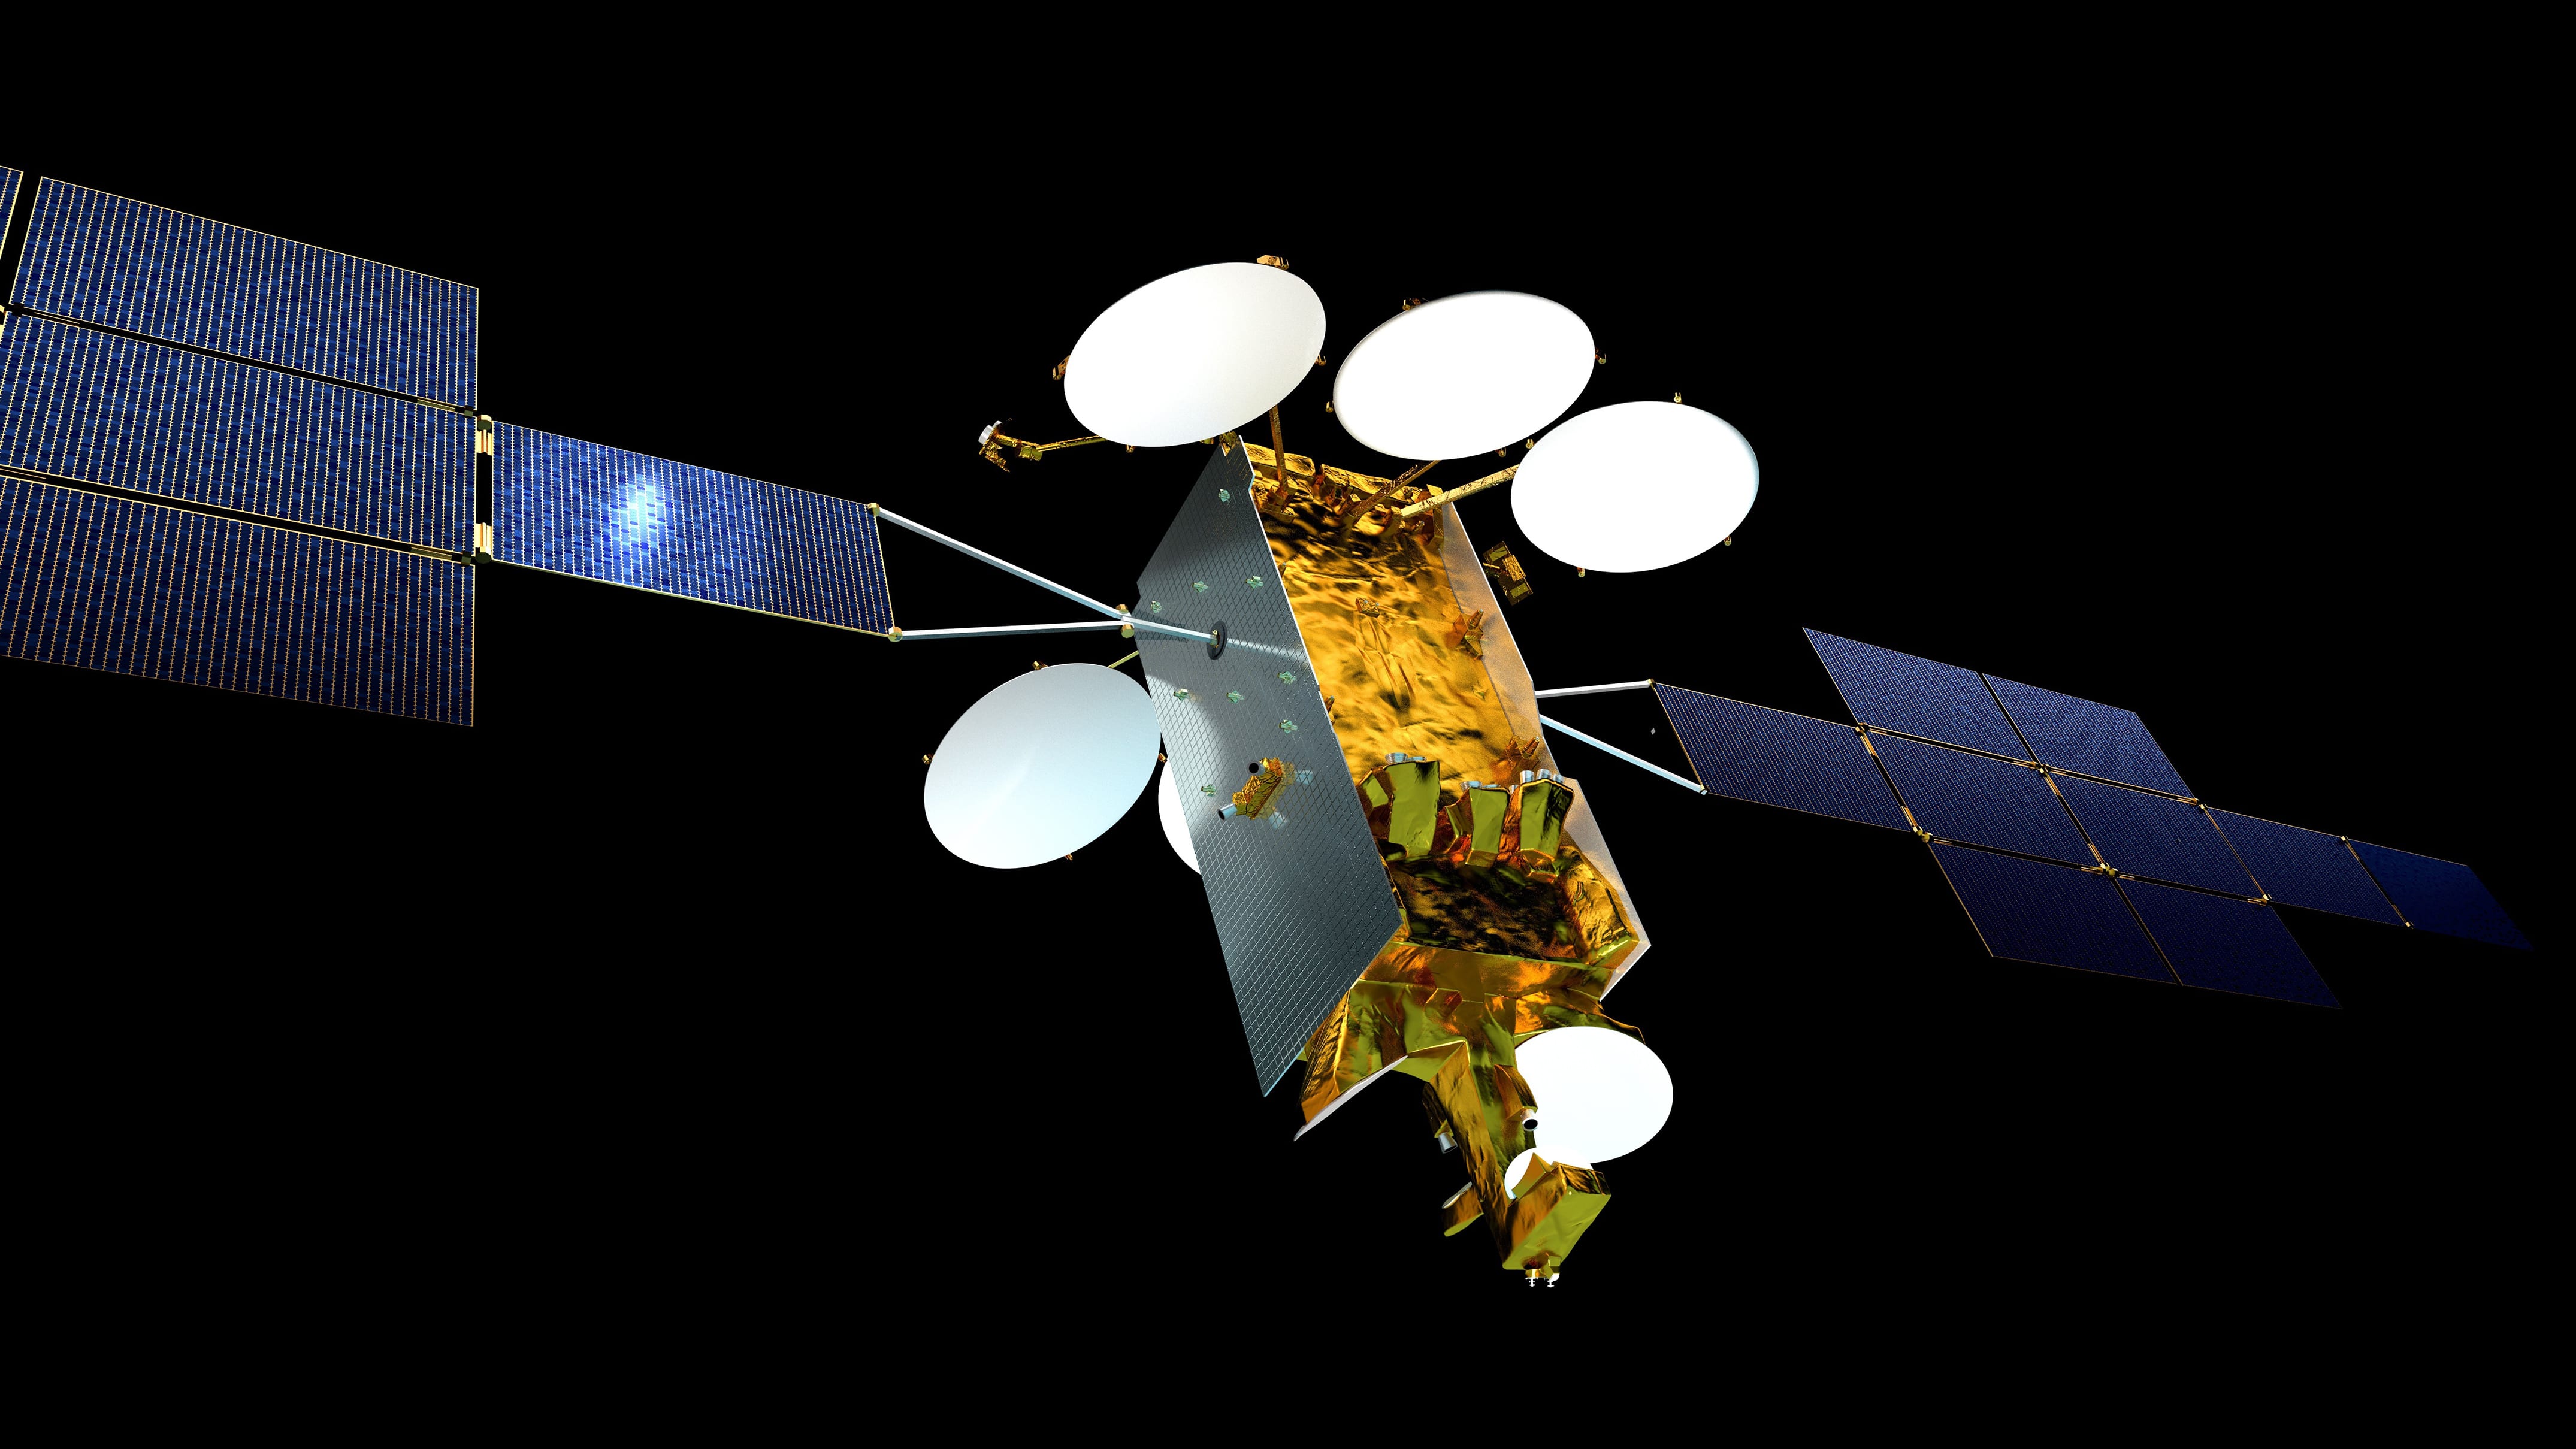 Un téléphone satellite utile en zones « désertiques » – aeroVFR